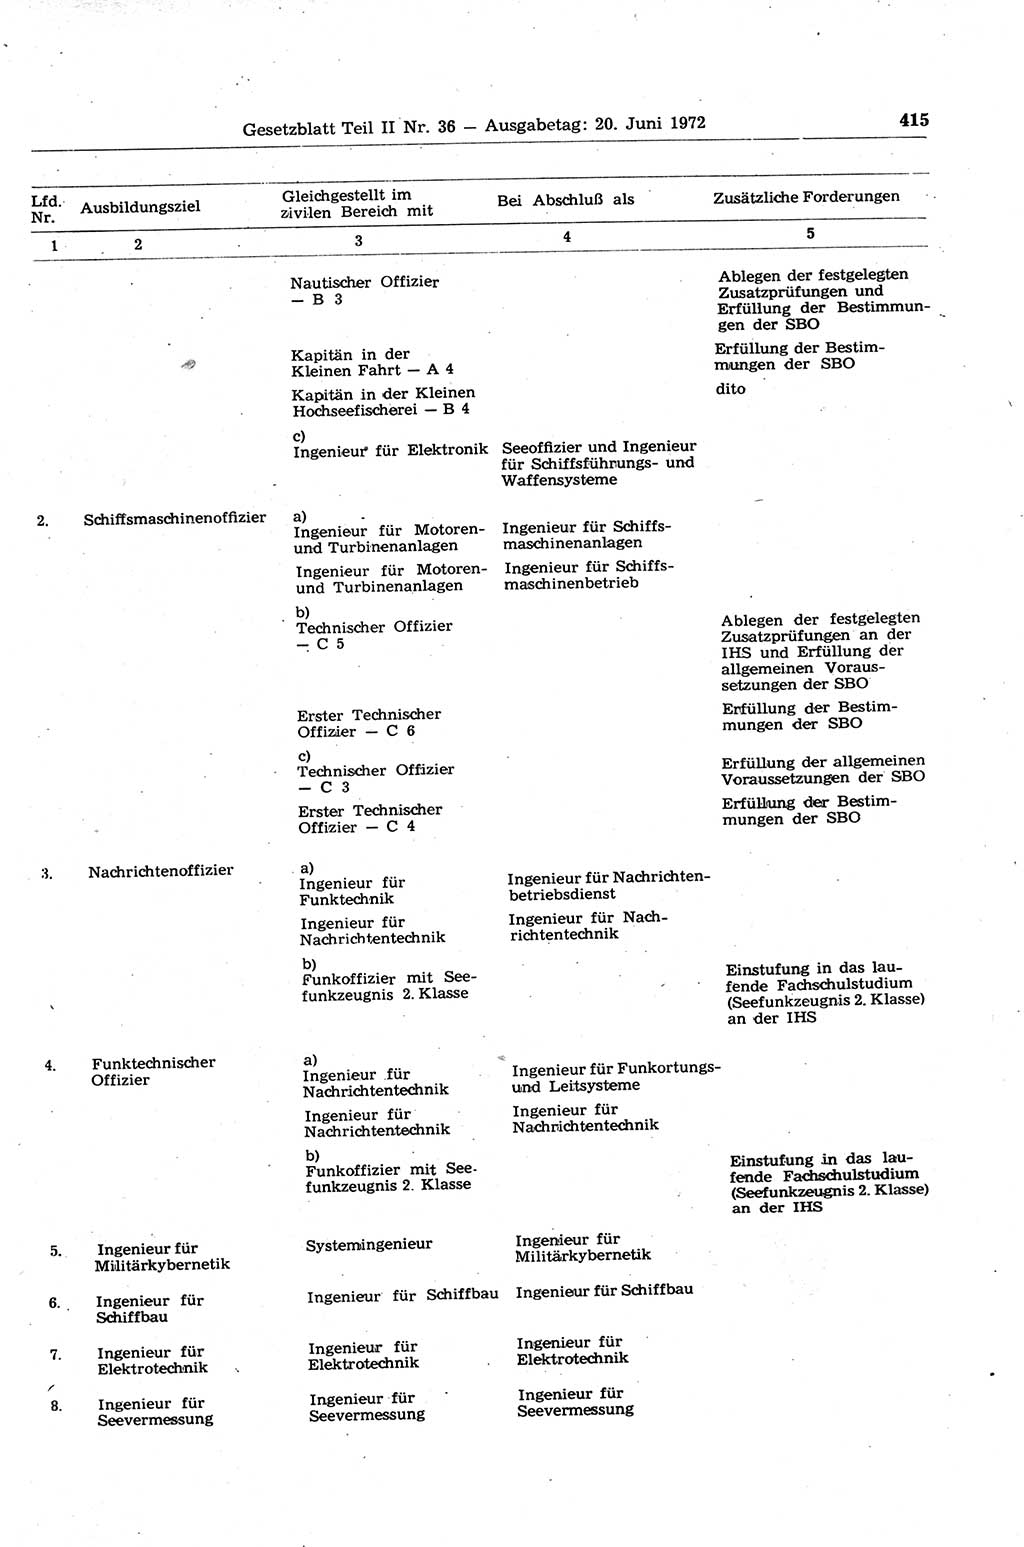 Gesetzblatt (GBl.) der Deutschen Demokratischen Republik (DDR) Teil ⅠⅠ 1972, Seite 415 (GBl. DDR ⅠⅠ 1972, S. 415)